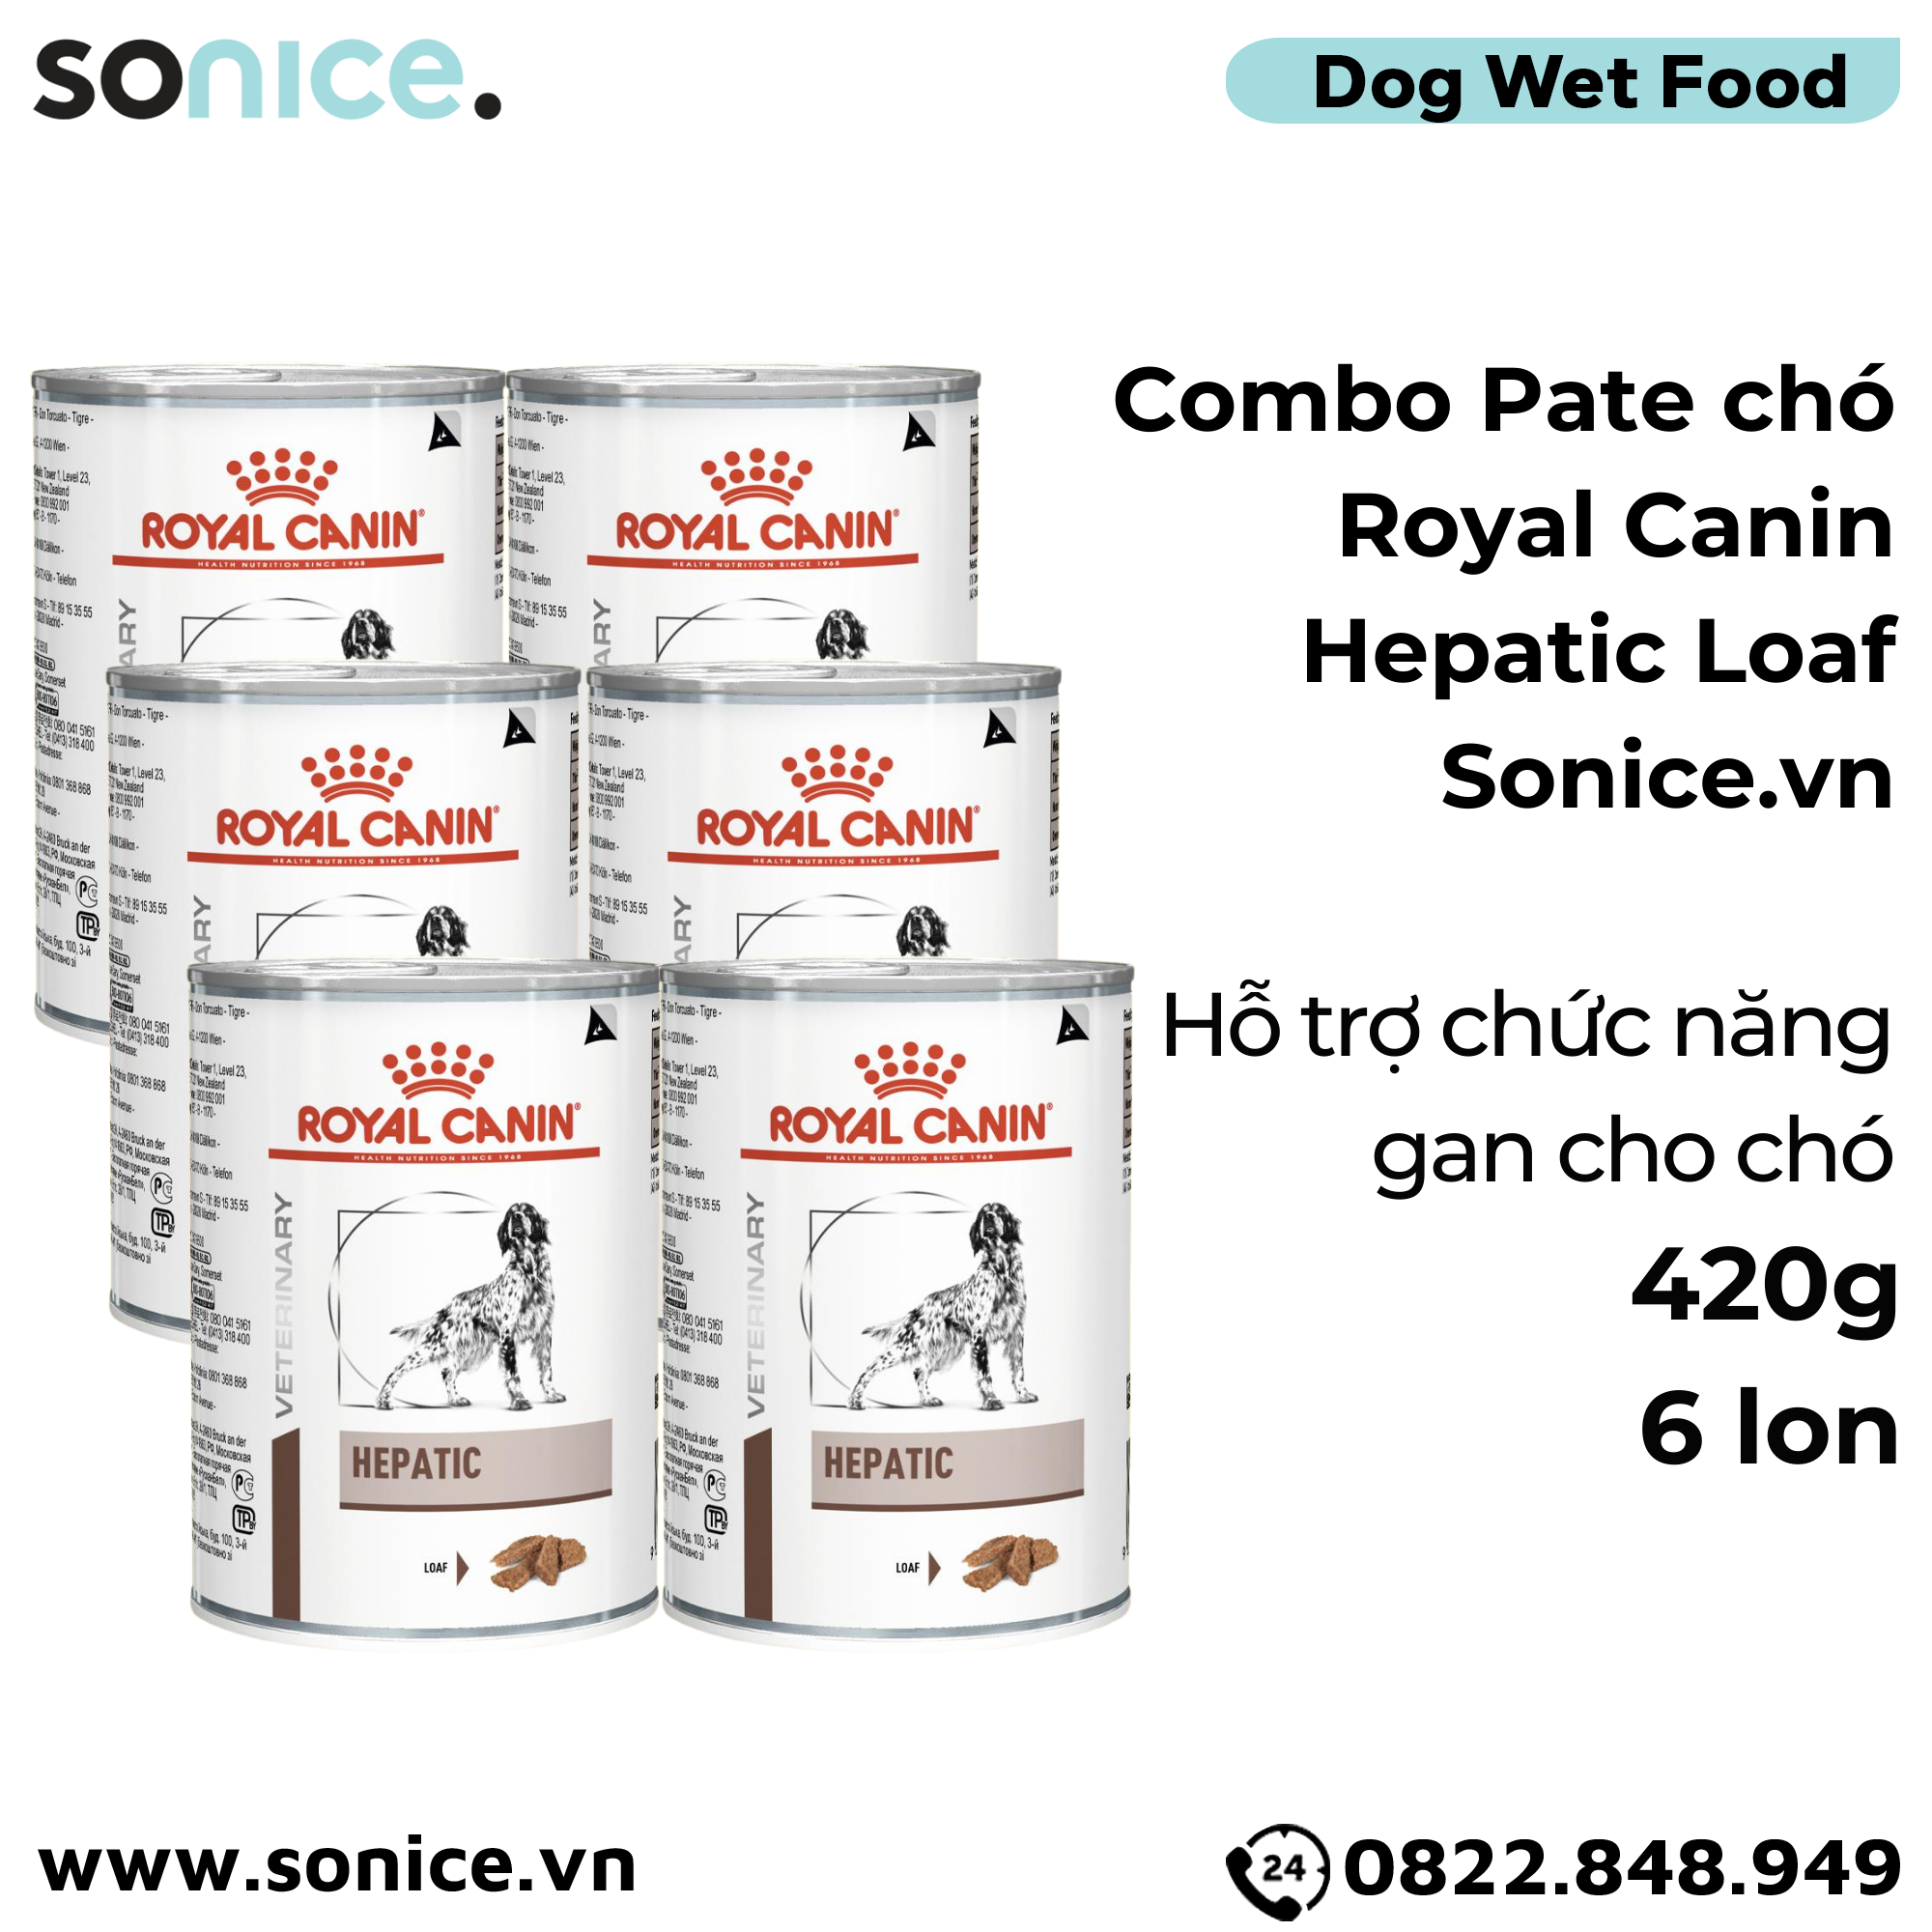  Combo Pate chó Royal Canin Hepatic Loaf 420g - 6 lon - Hỗ trợ chức năng gan SONICE. 